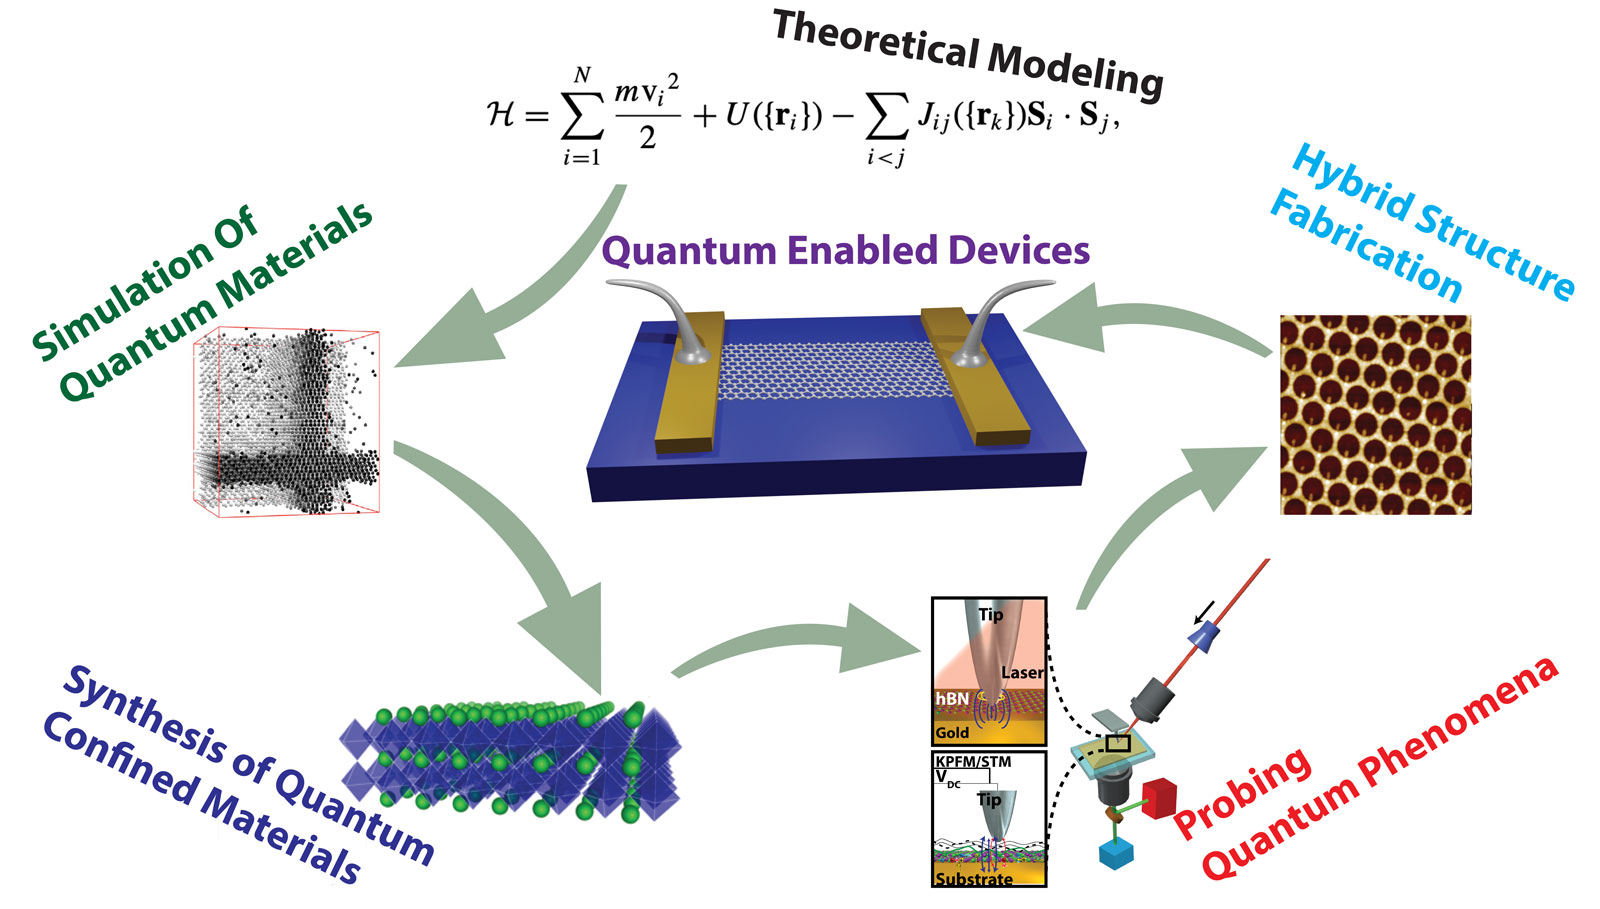 Quantum Science and Engineering Program (QSEP) focused on quantum materials and quantum sensing